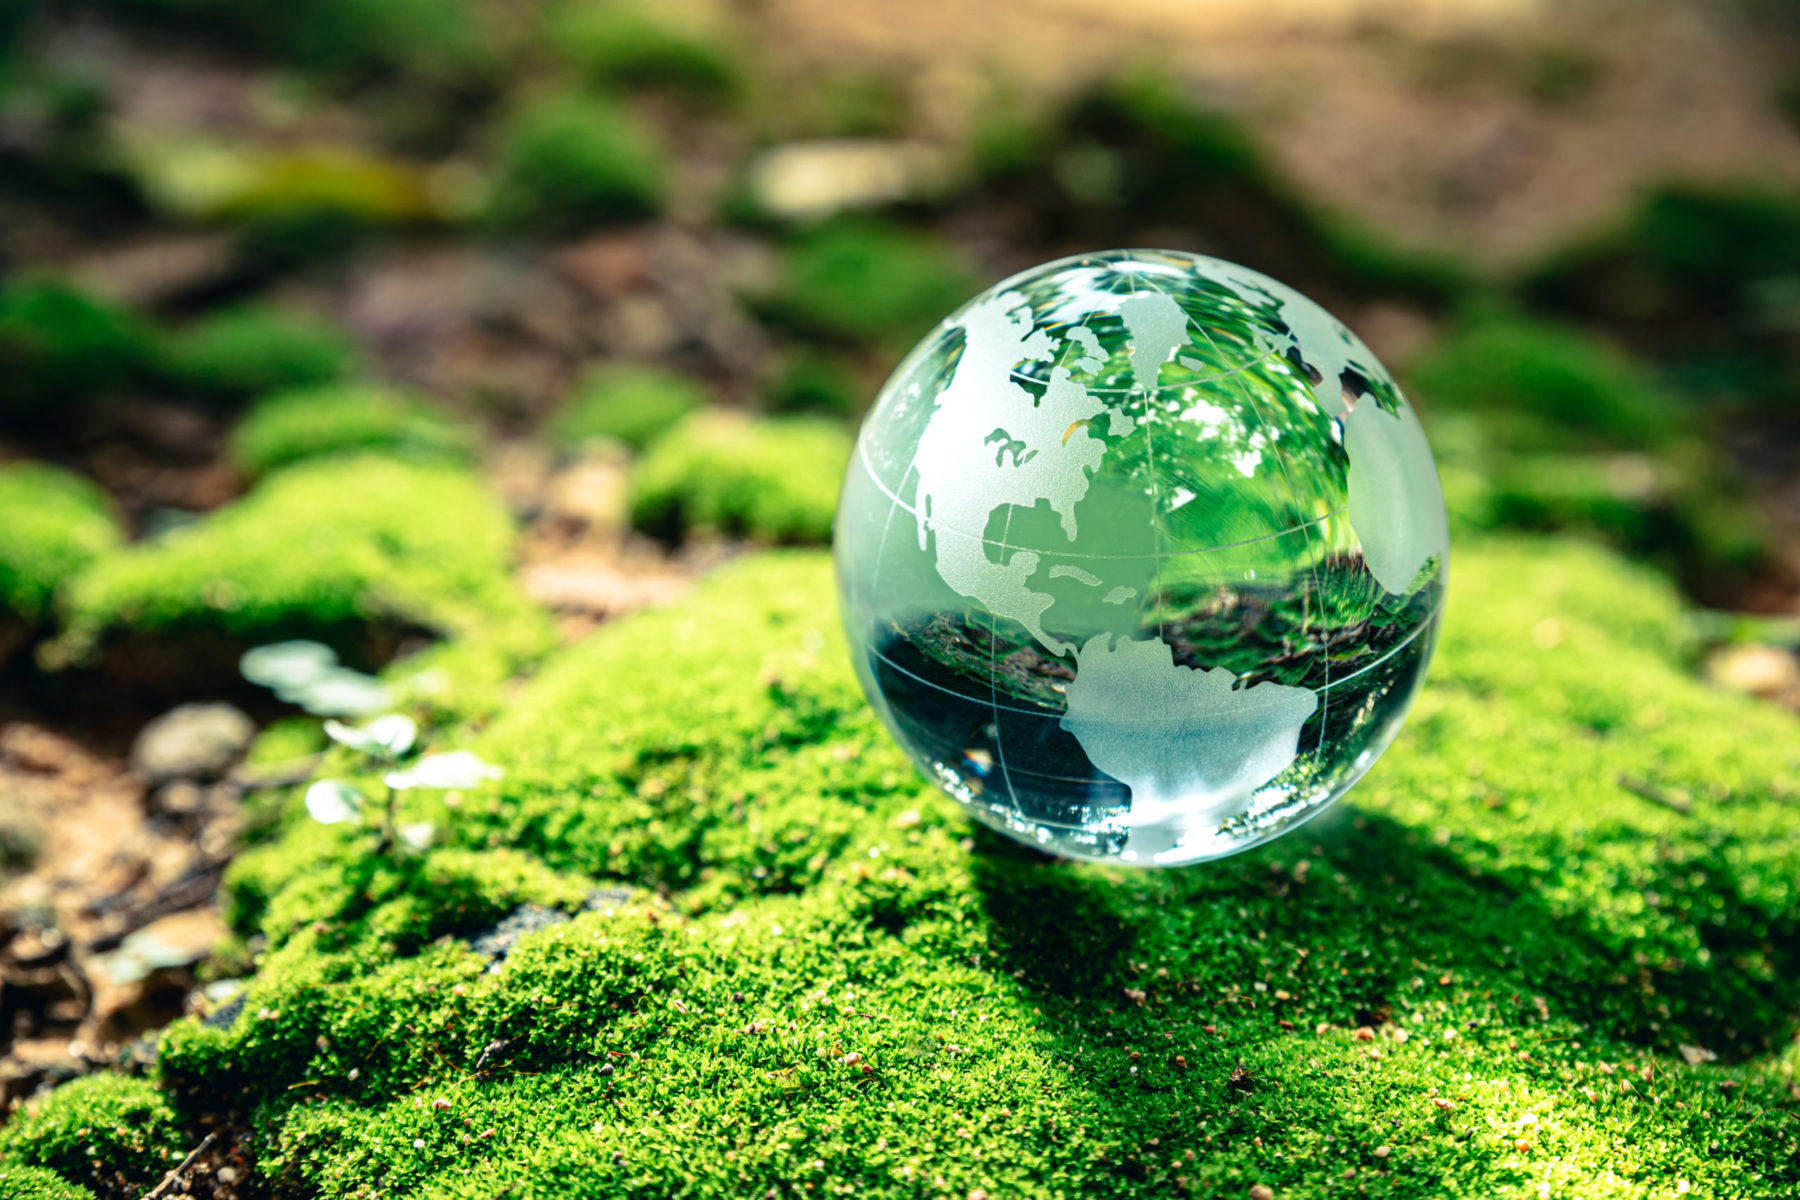 Un glob terrestre fait de cristal, posé sur un sol verdoyant.